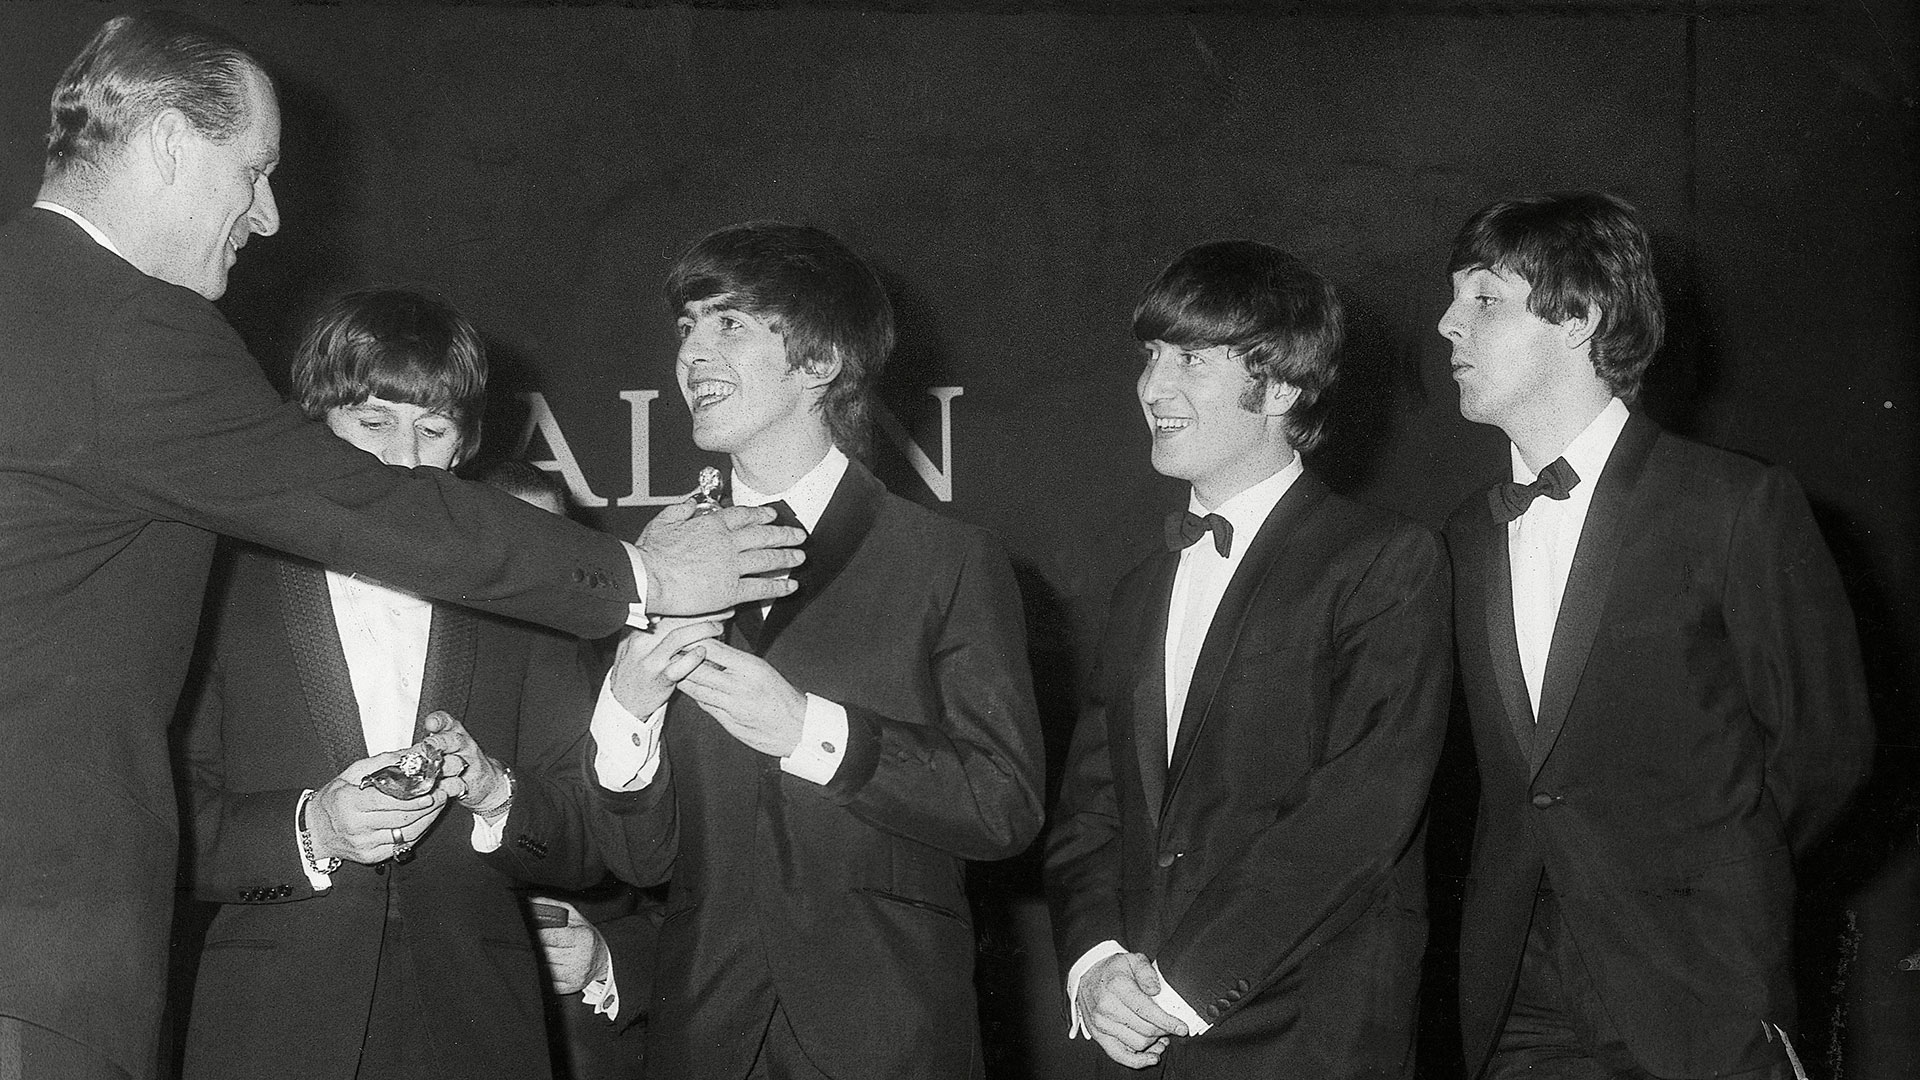 El duque de Edimburgo con Ringo Starr, George Harrison, John Lennon y Paul McCartney en 1964, durante los Carl Alan Awards